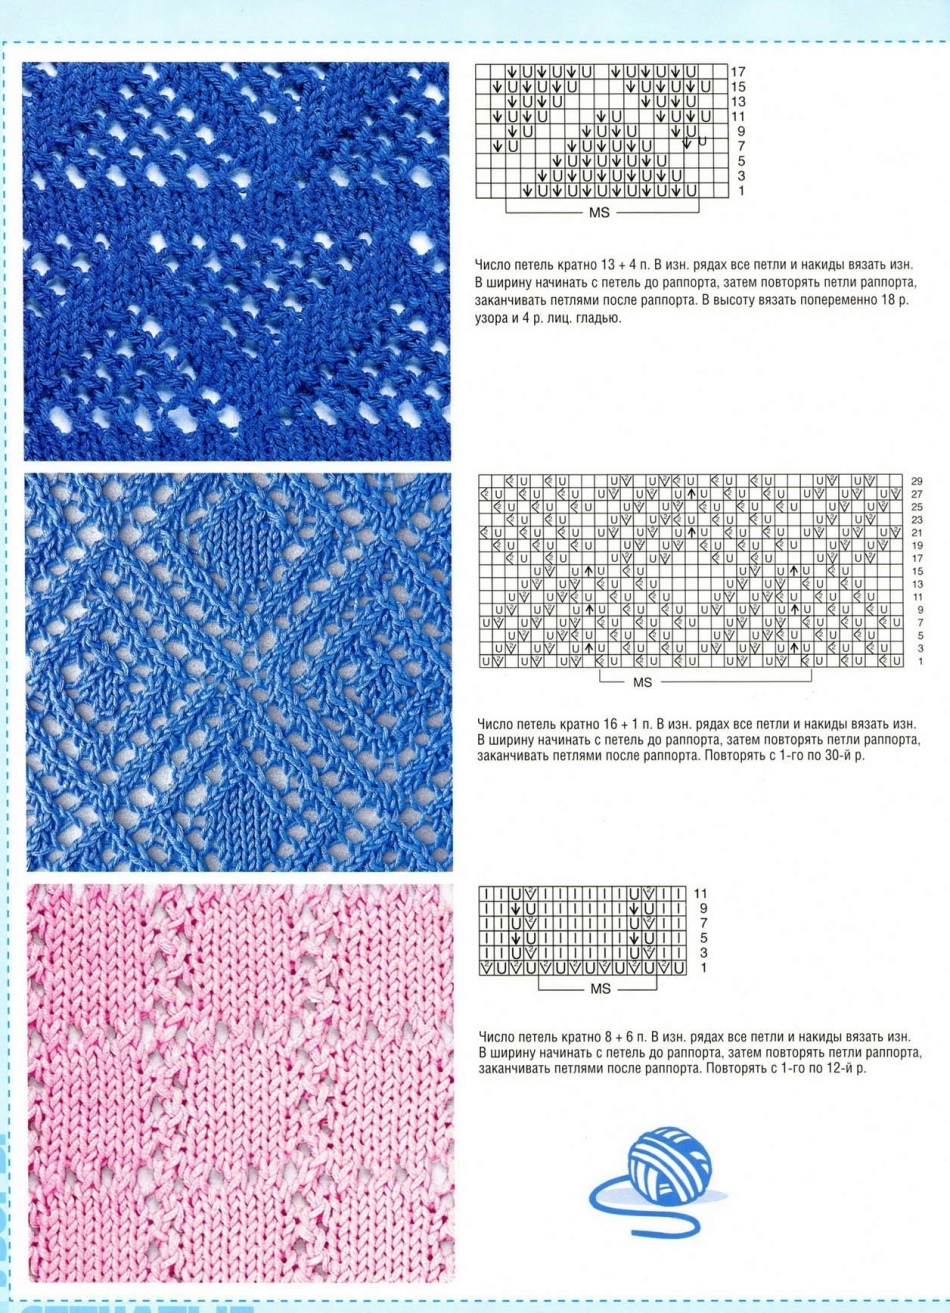 Ανοιχτά πρότυπα και σχήματα για αυτά για γάντια πλέξιμο με βελόνες πλέξιμο, Παράδειγμα 3